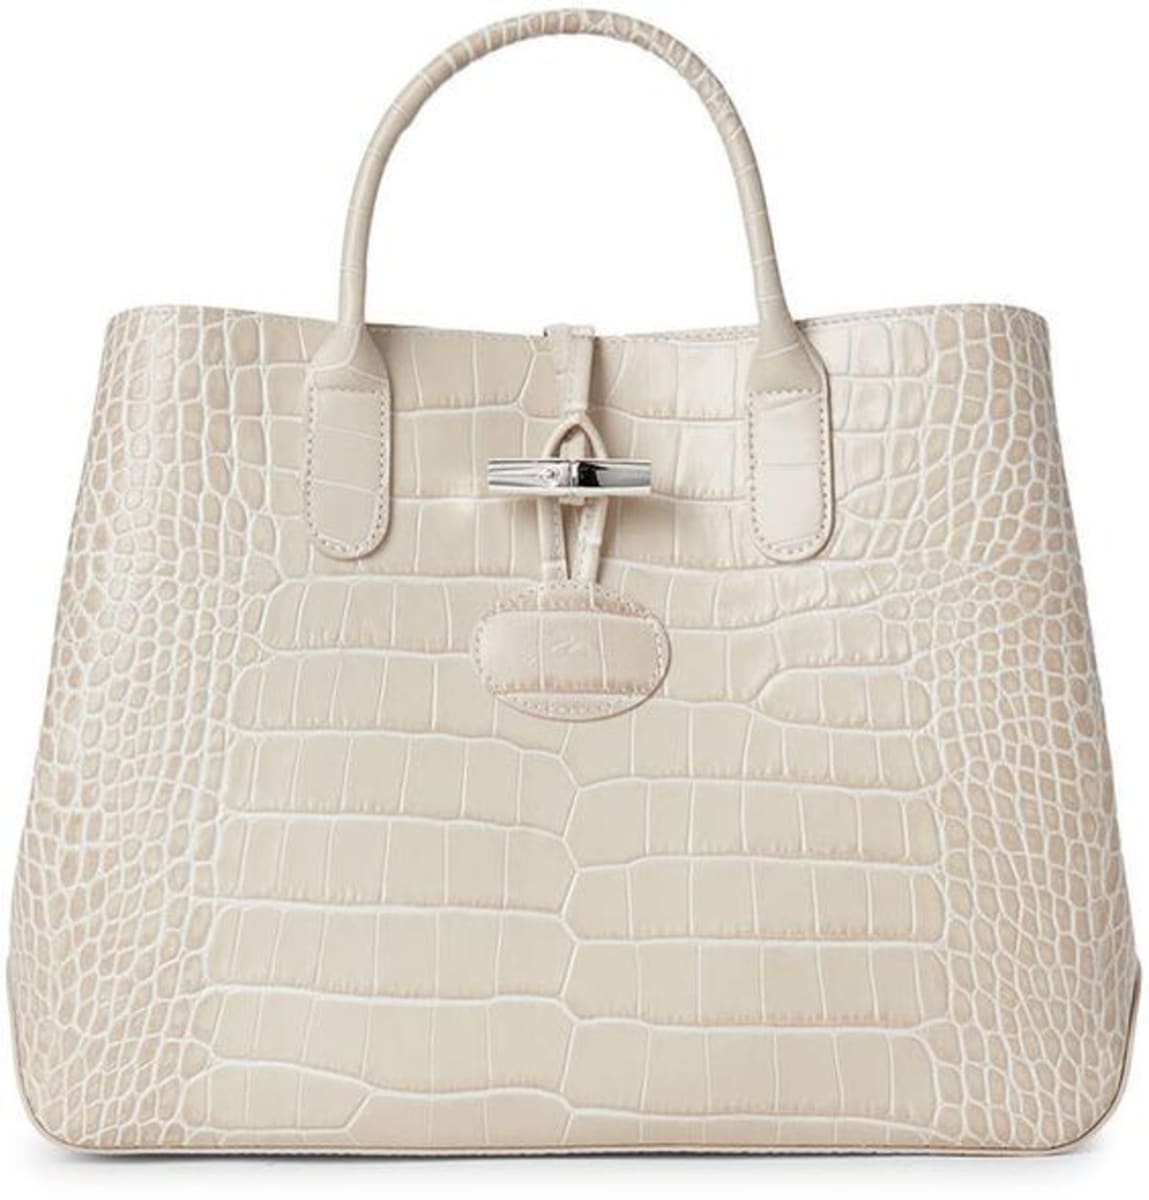 Longchamp Crocodile-Embossed Leather Handbags